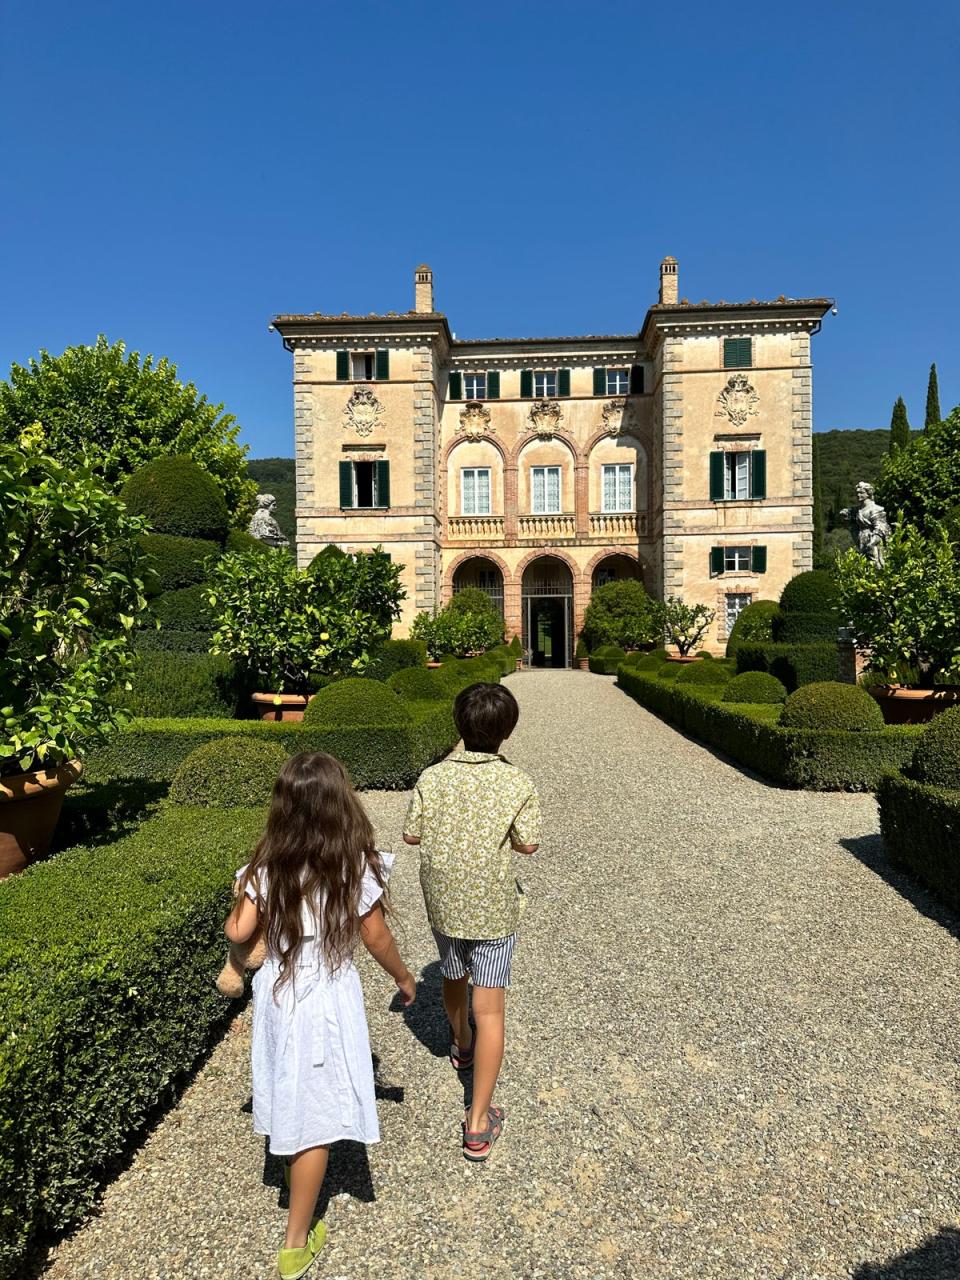 Villa Cetinale in Sienna (Alex Eagle)